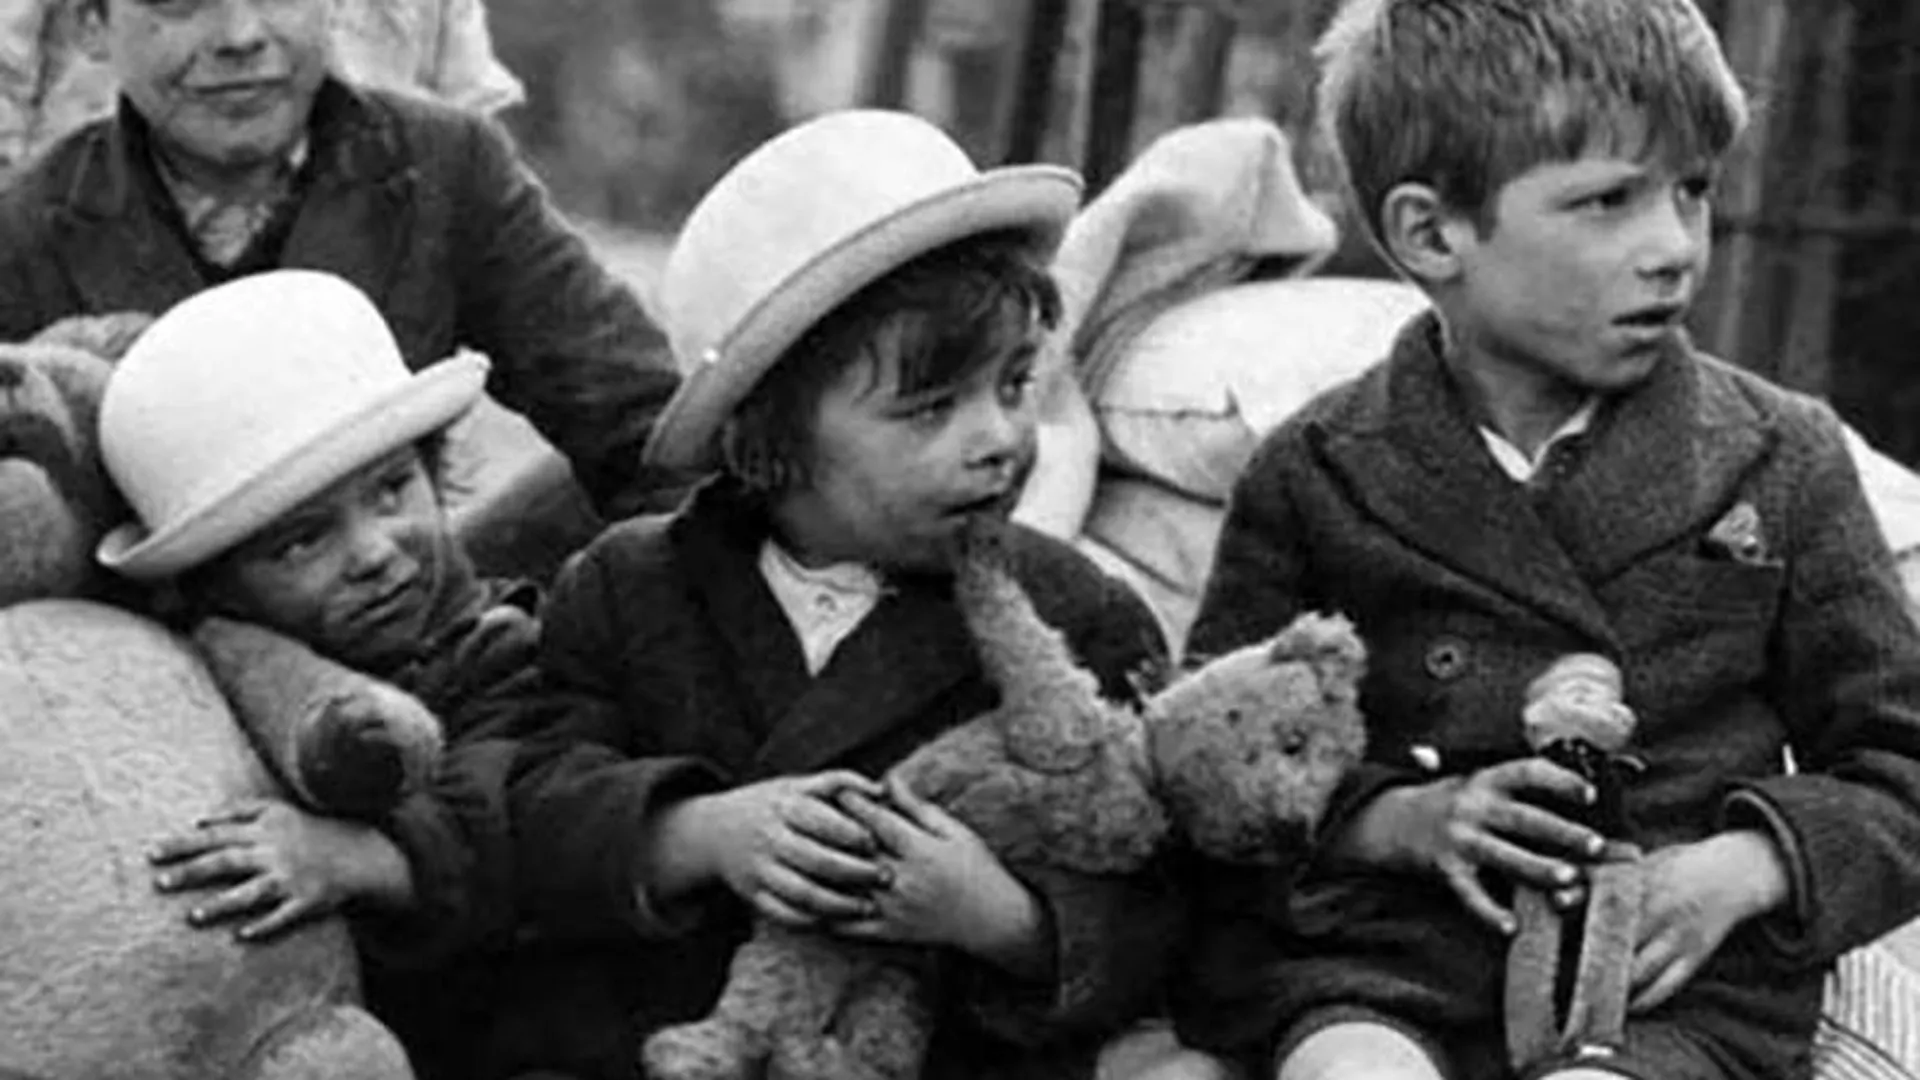 Талисманы из лагеря смерти: в Подмосковье откроется выставка кукол, которыми дети играли в концлагерях 